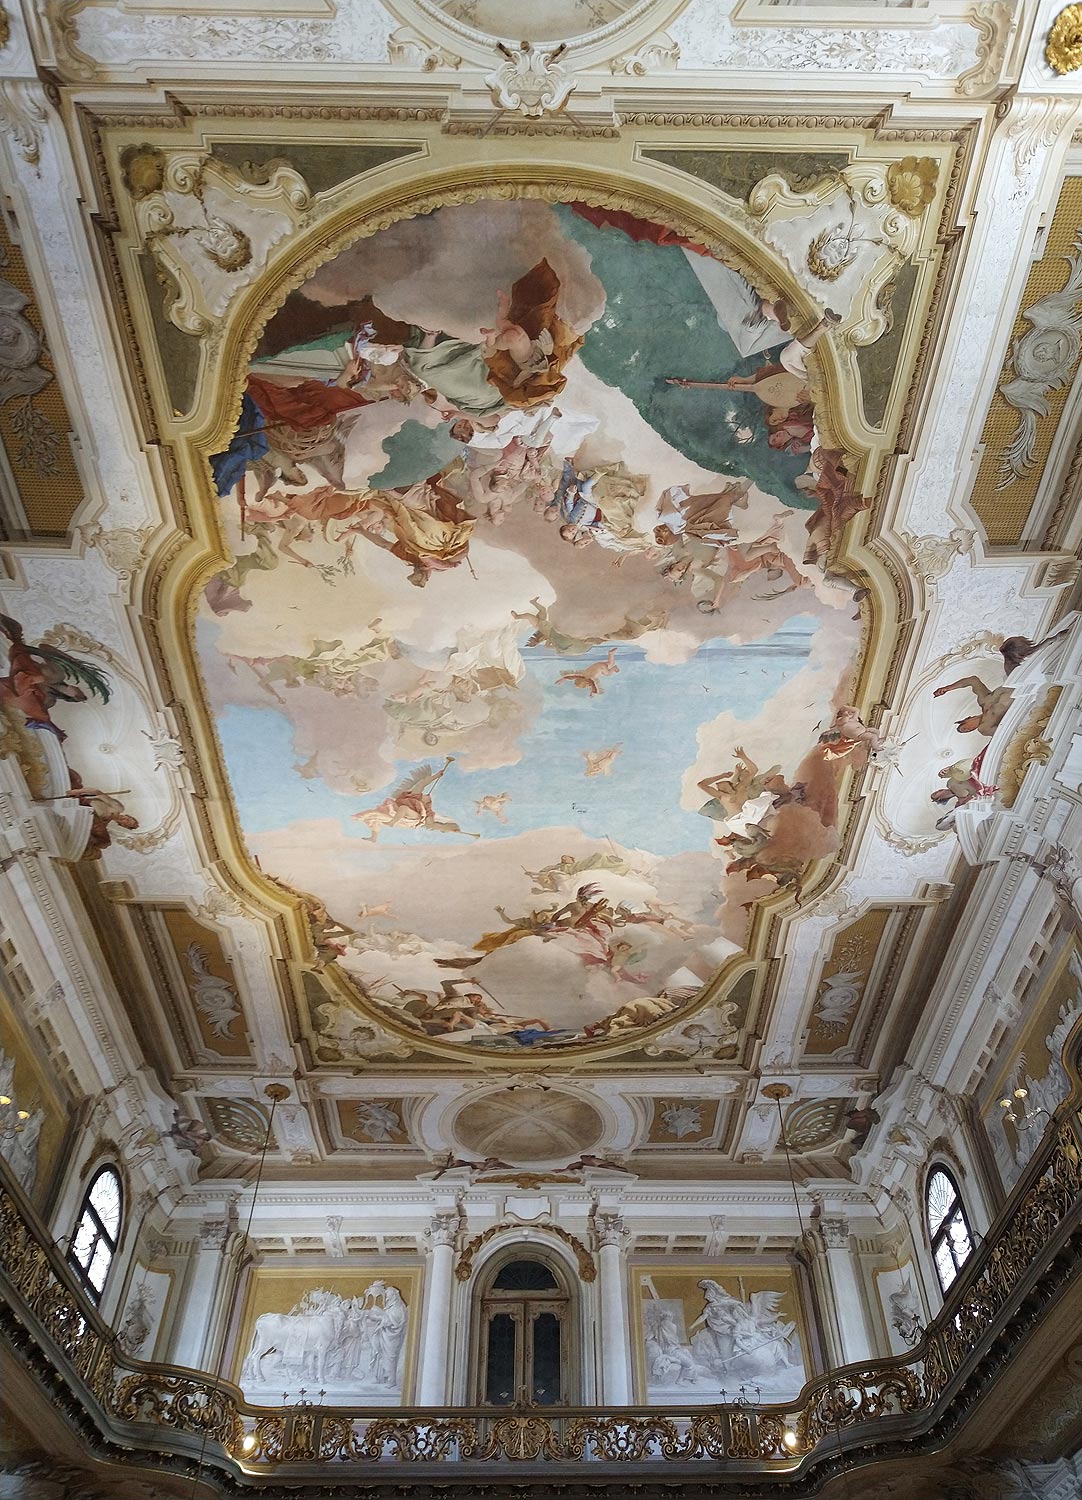 La sala da ballo di Villa Pisani con l'affresco di Tiepolo